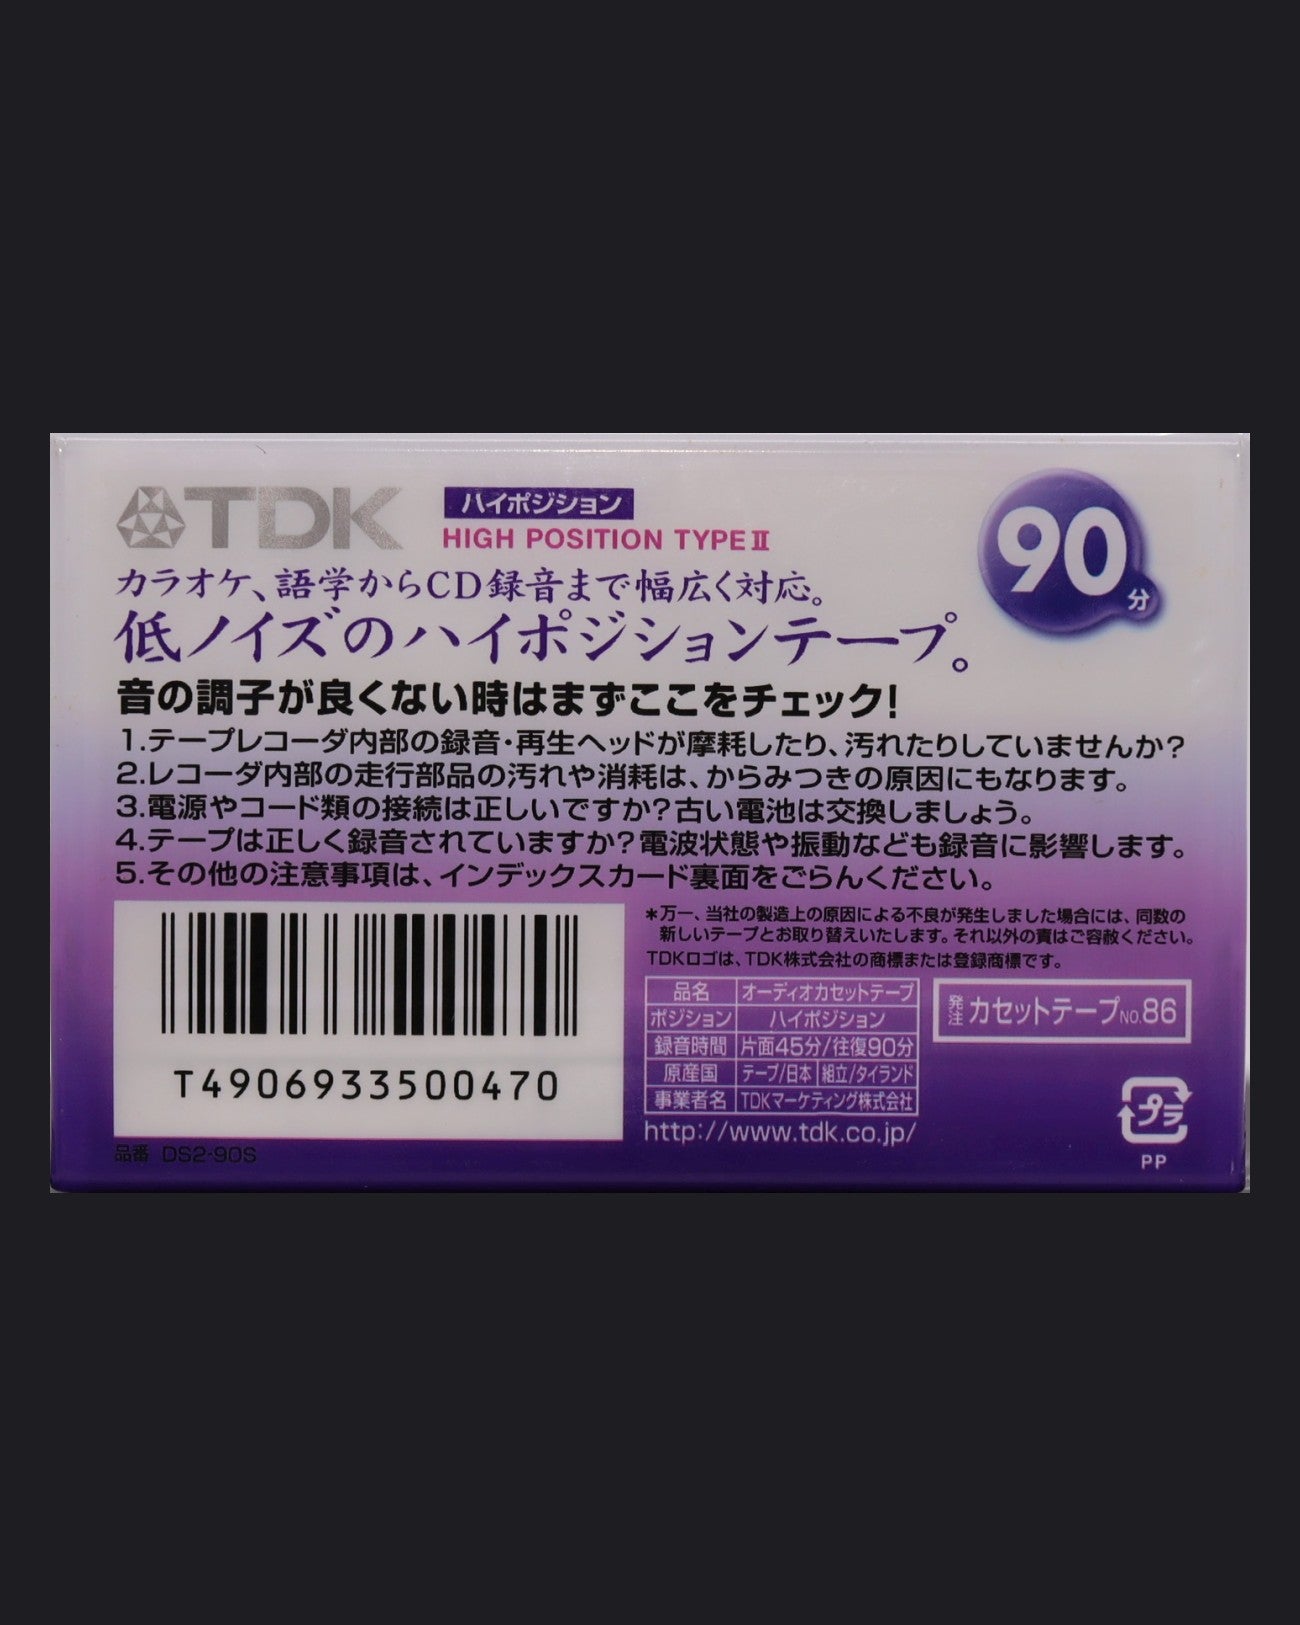 TDK DS2 (1998-1999 JP) Ultra Ferric